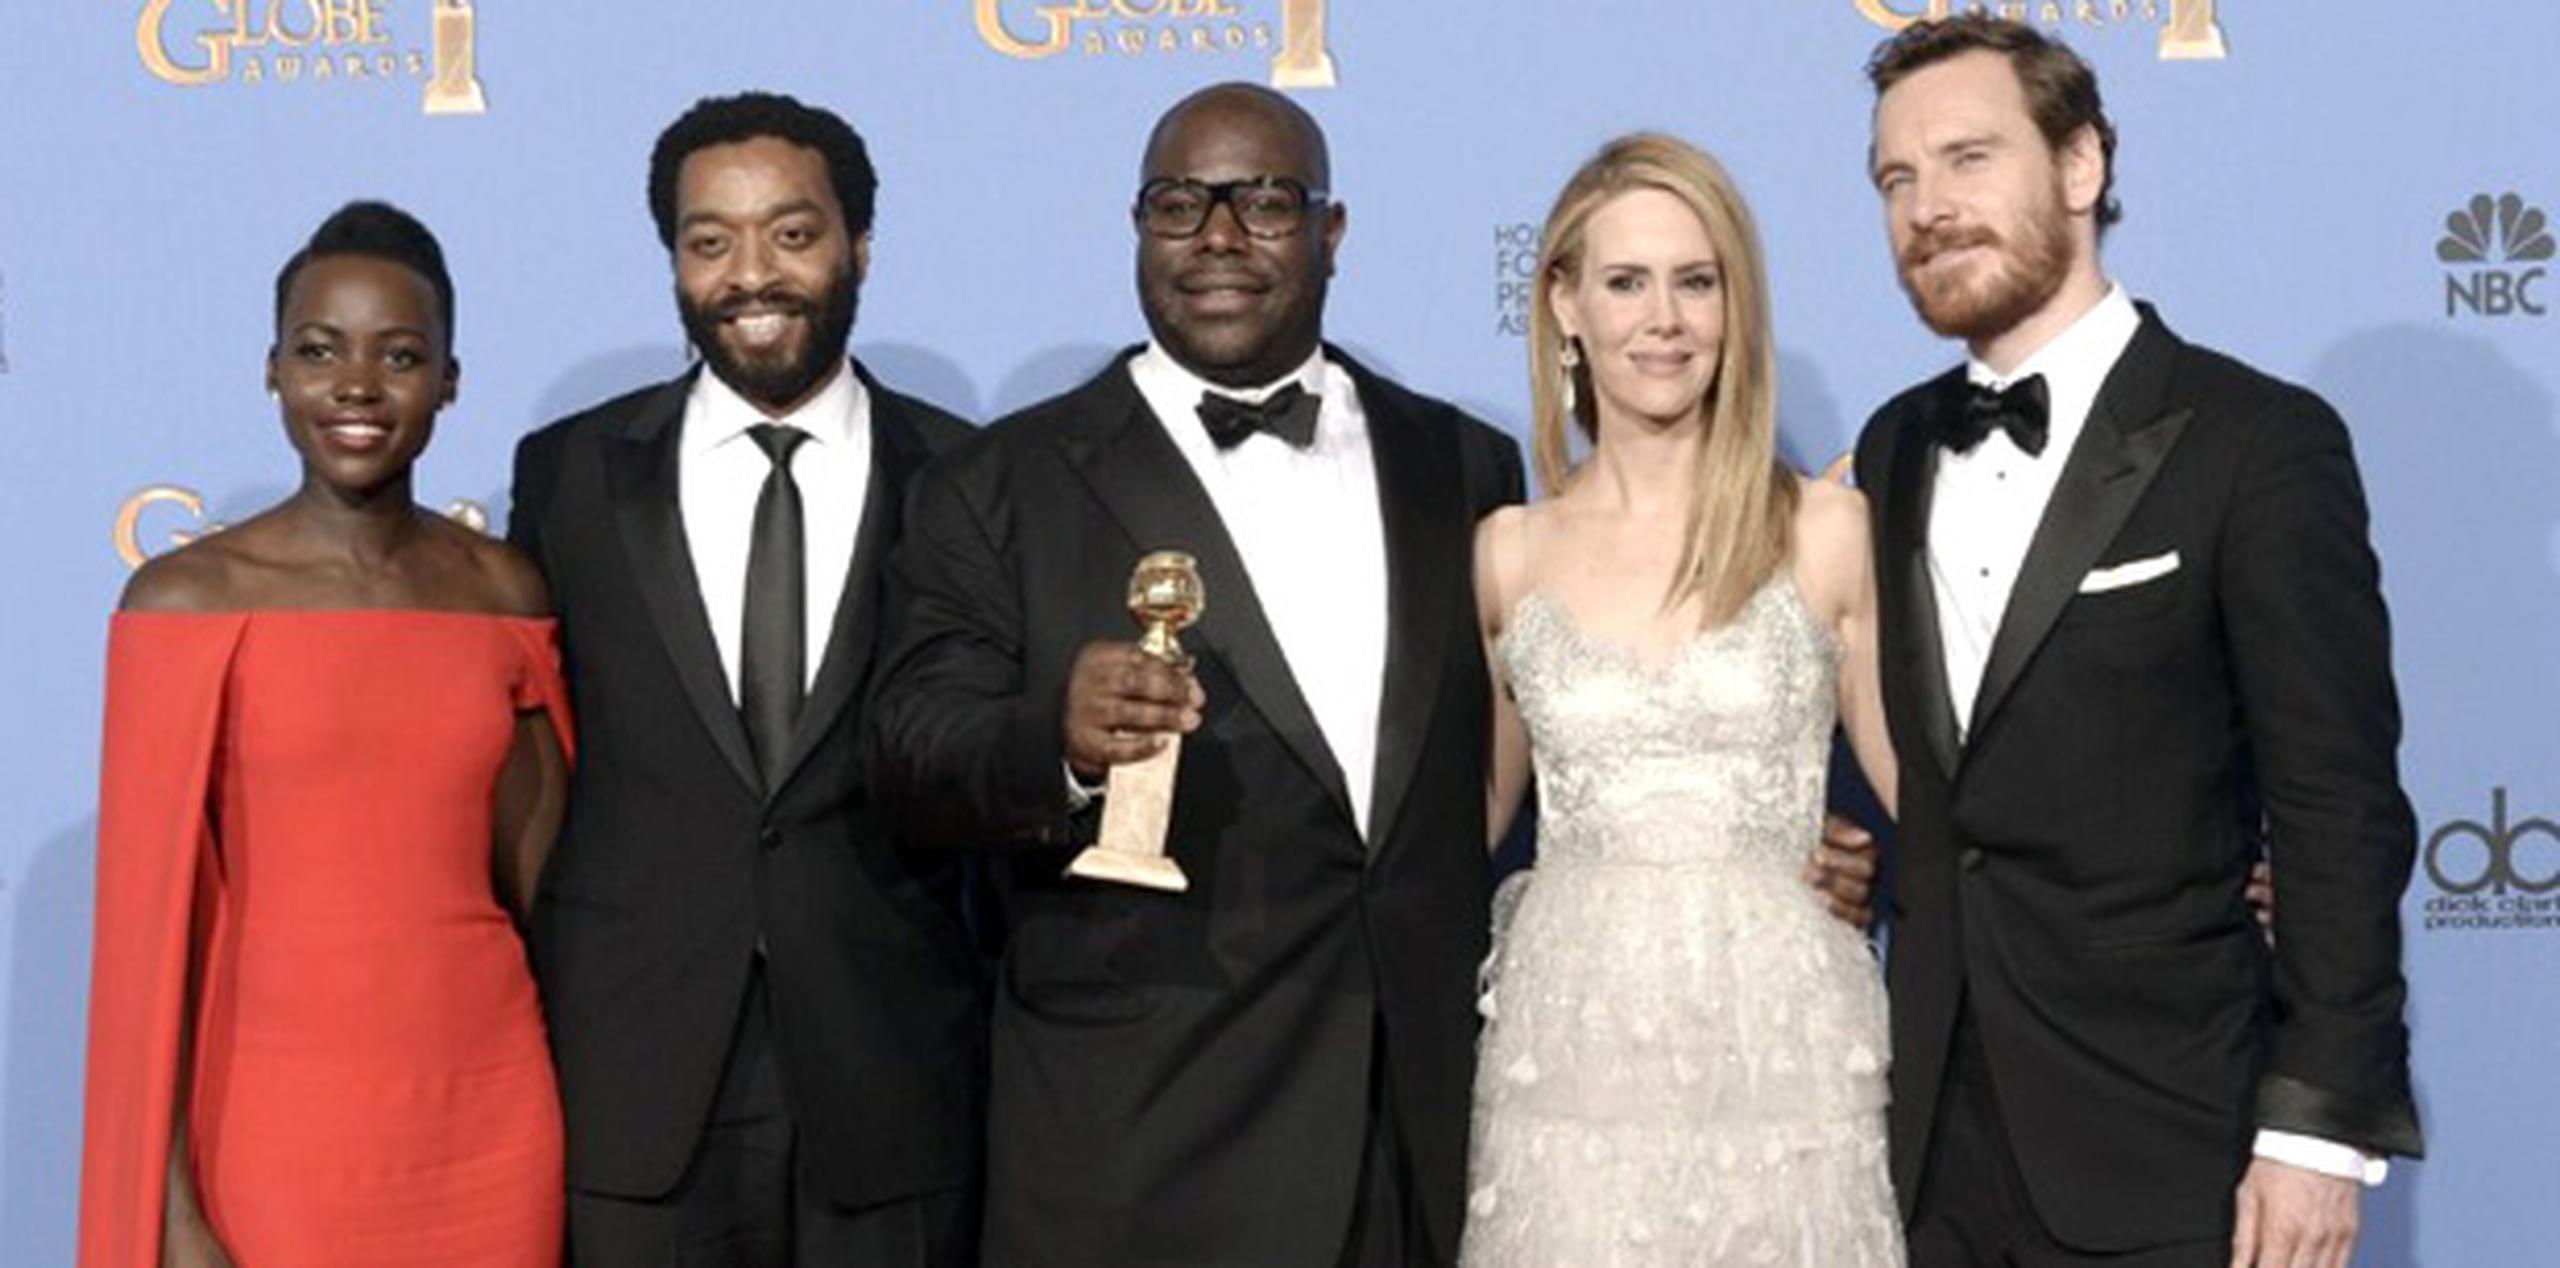 Los actores Lupita Nyong'o, Chiwetel Ejiofor, Sarah Paulson y Michael Fassbender rodean al director Steve McQueen quien sostiene el premio Globo de Oro al mejor drama que anoche ganó el filme 12 Years a Slave. (AFP)